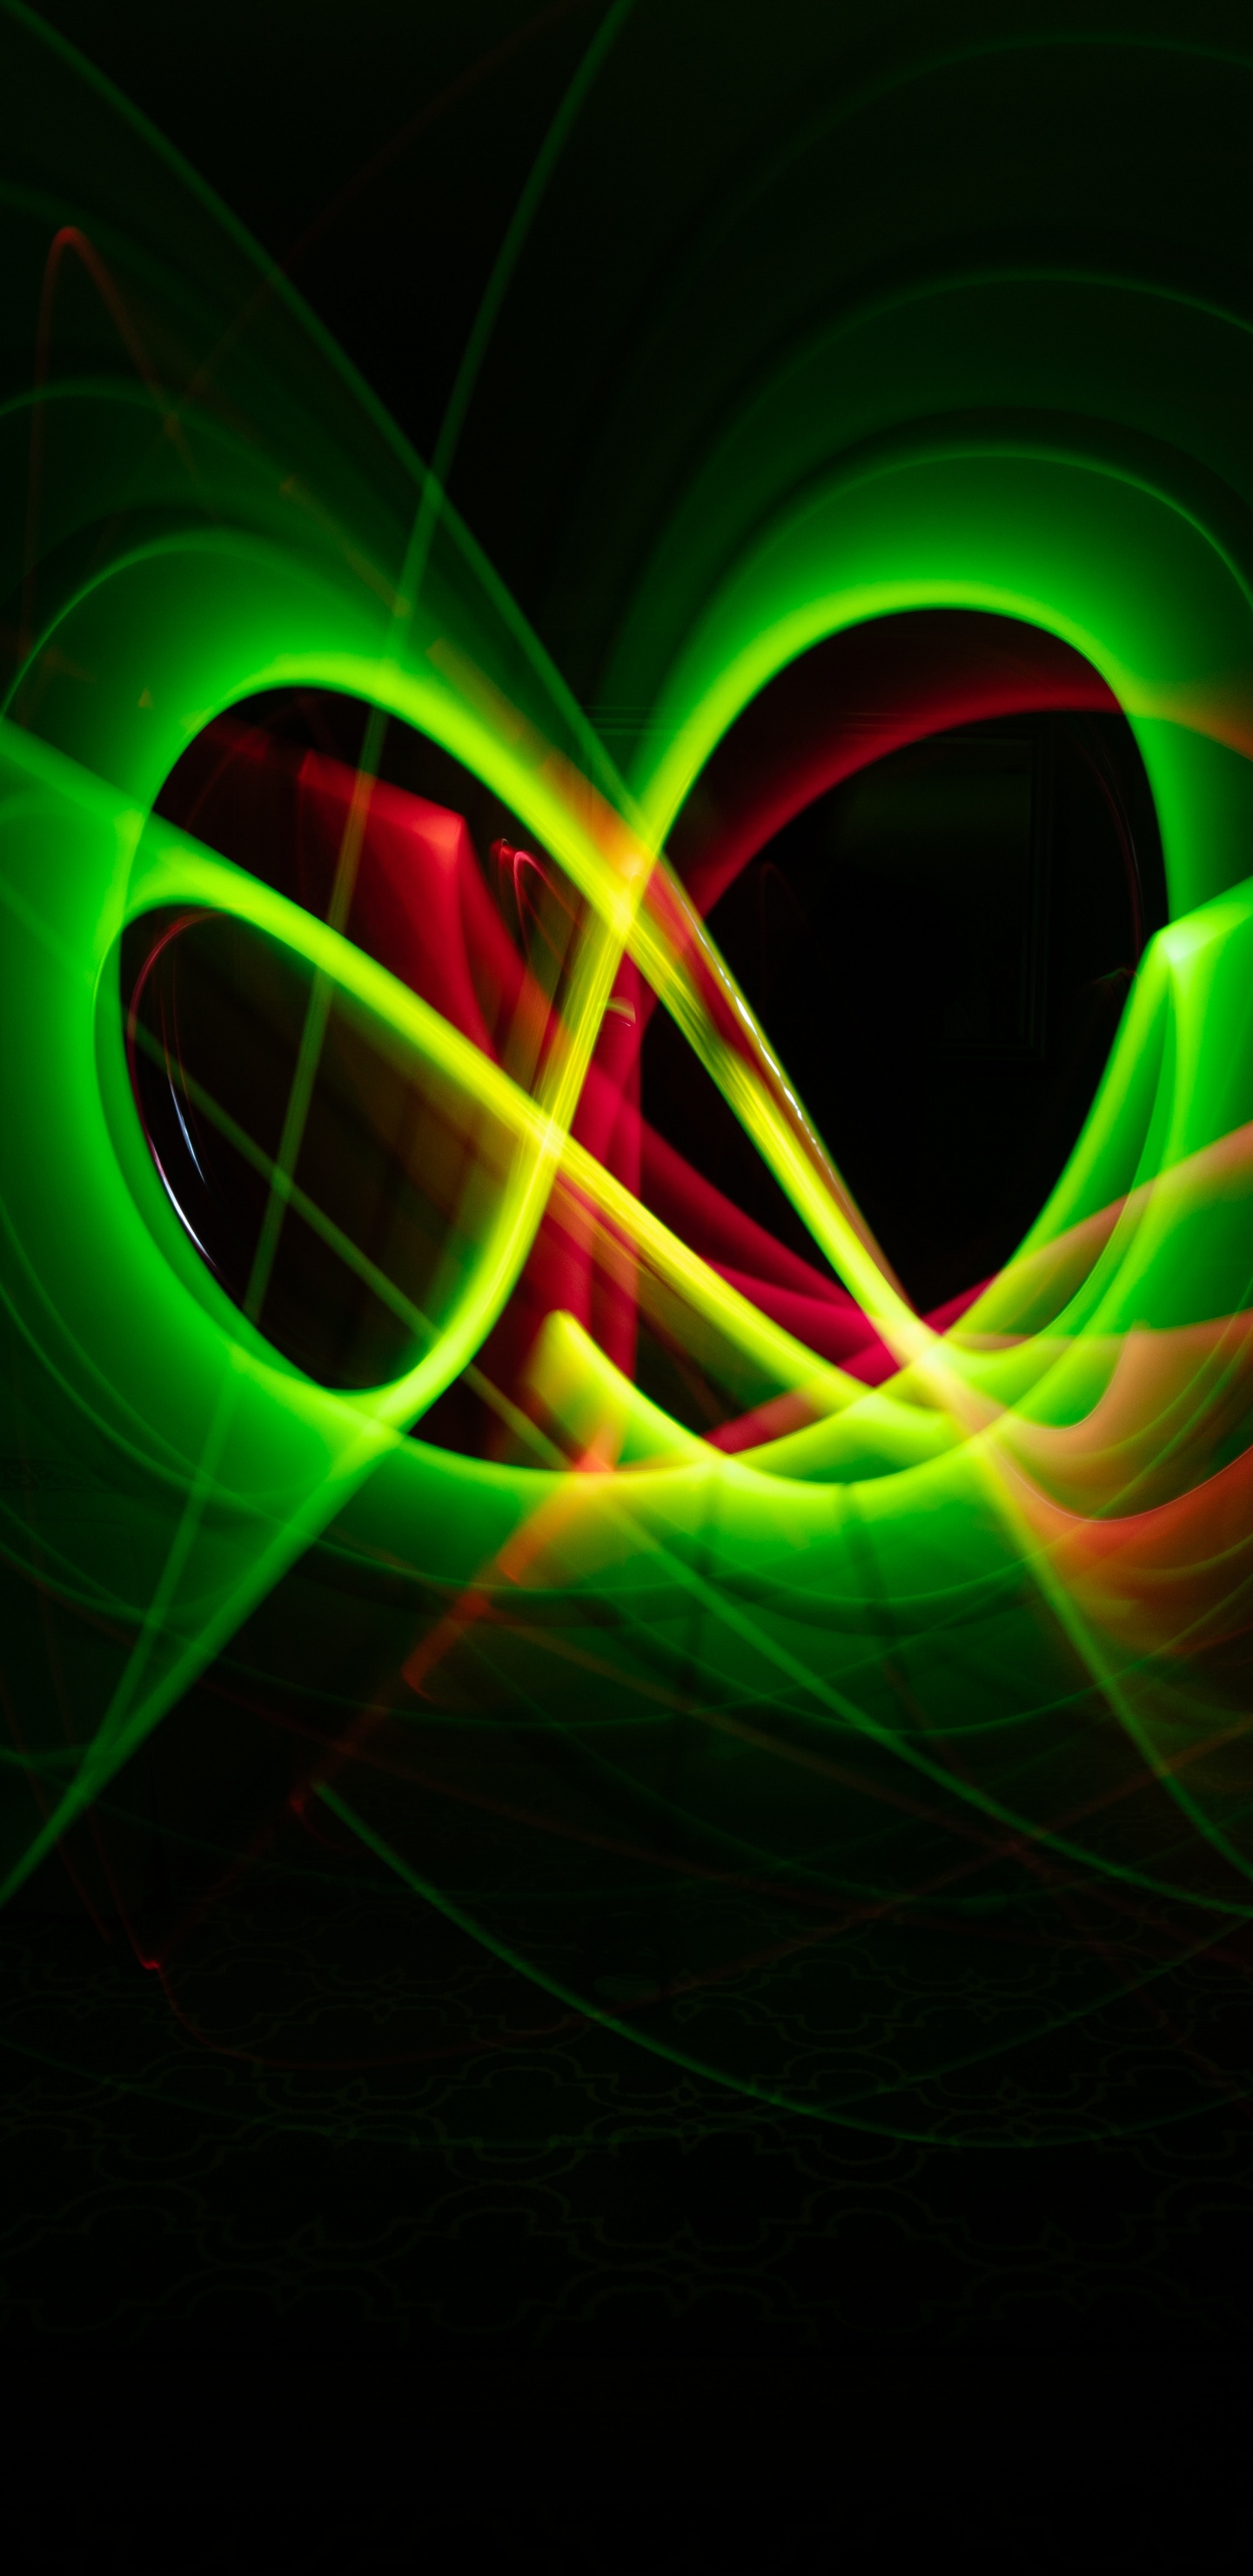 Grünes Und Rotes Licht Digitales Hintergrundbild. Wallpaper in 1440x2960 Resolution